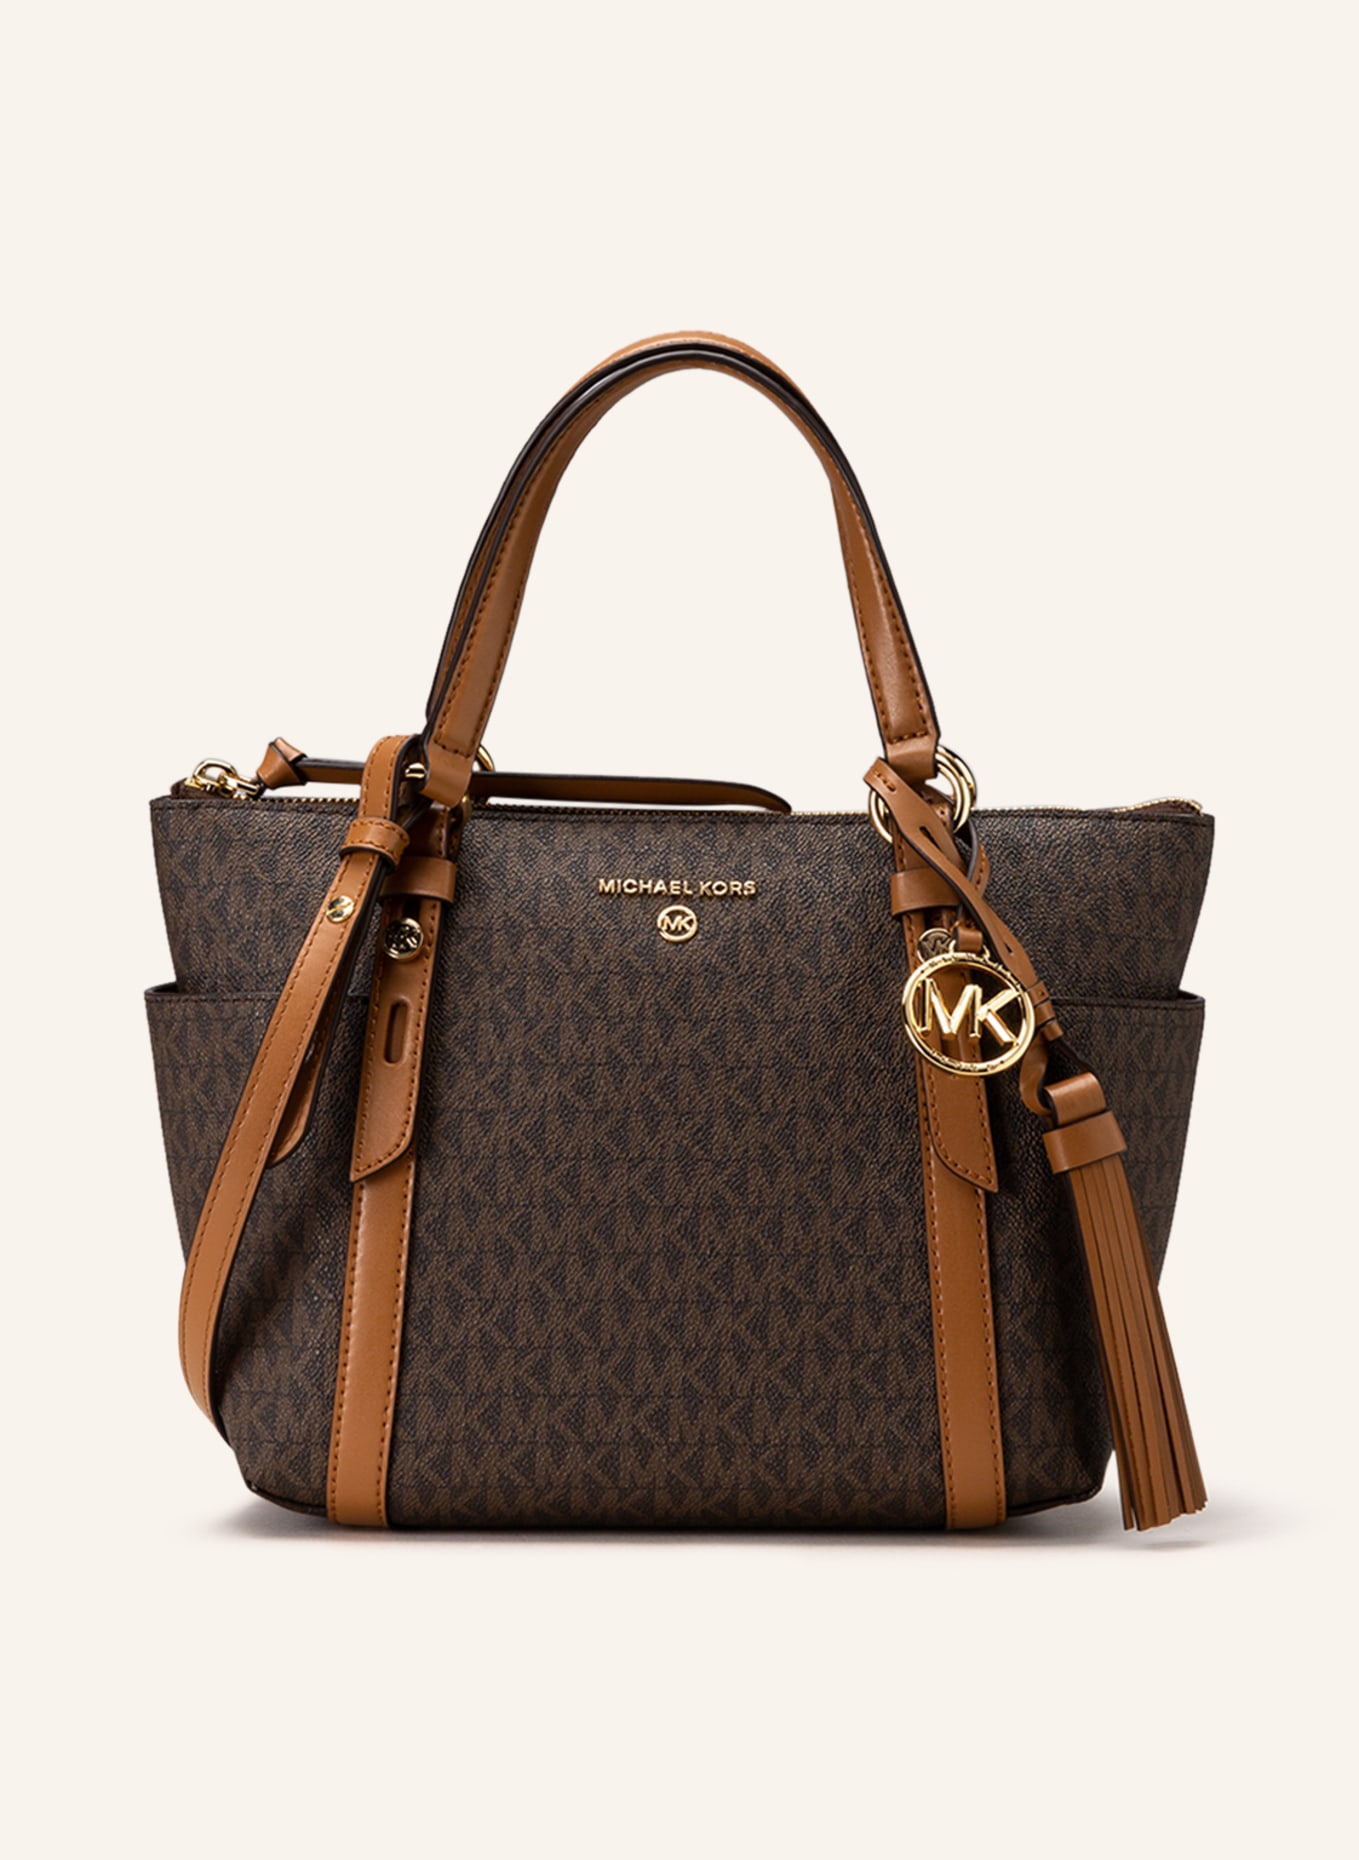 MICHAEL KORS Handbag, Color: BROWN (Image 1)